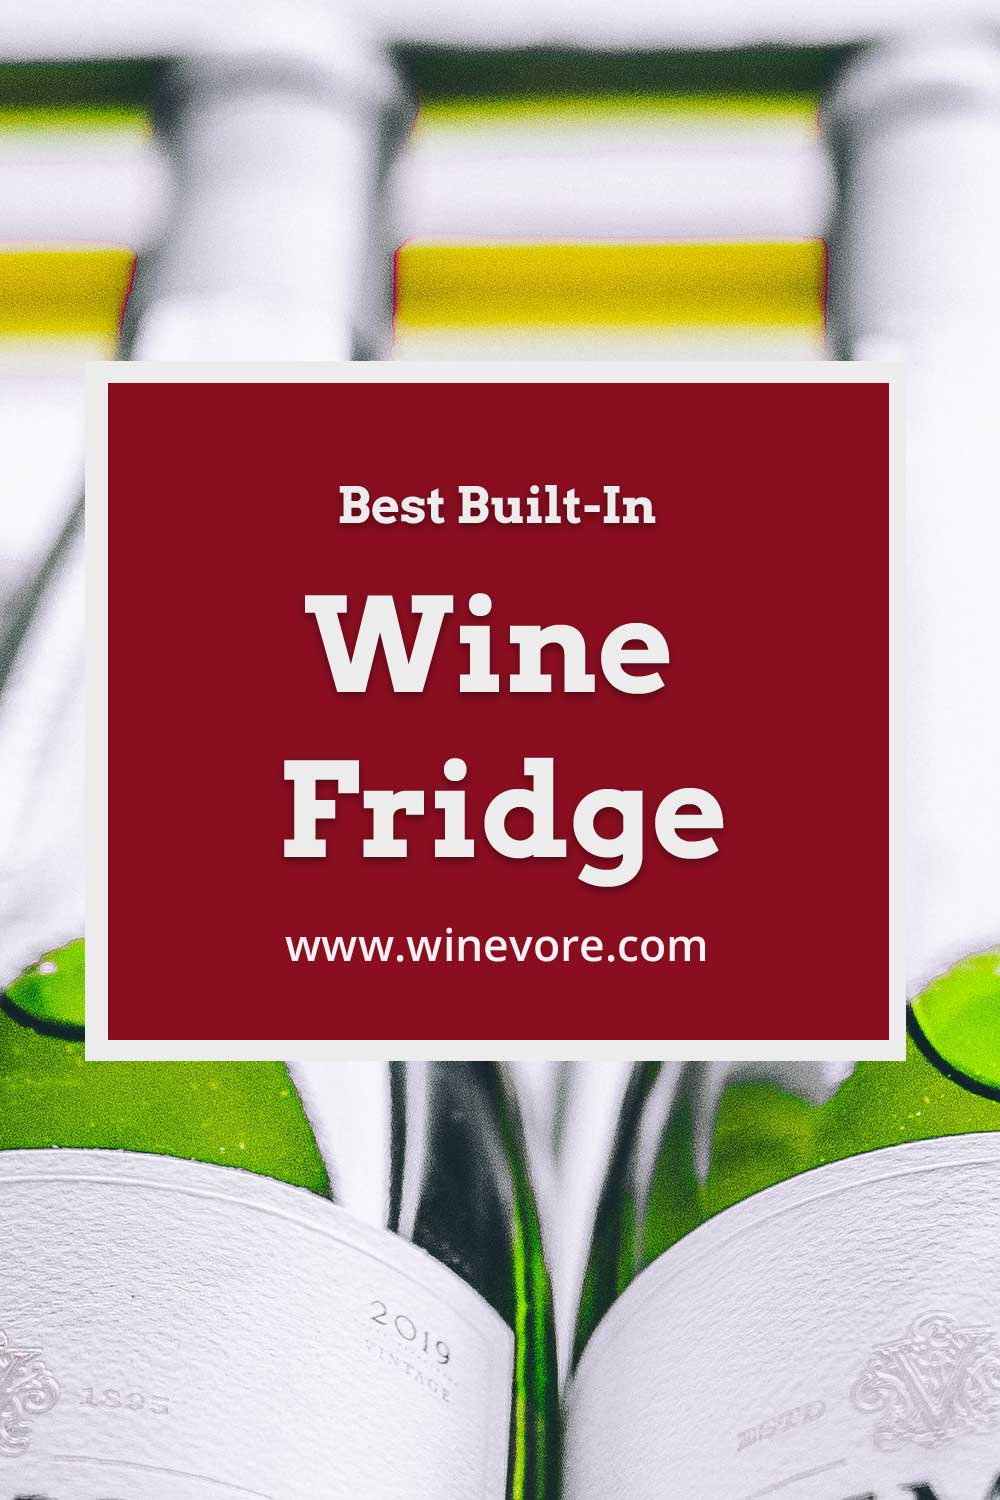 Two wine bottles side-by-side - Best Built-In Wine Fridge.